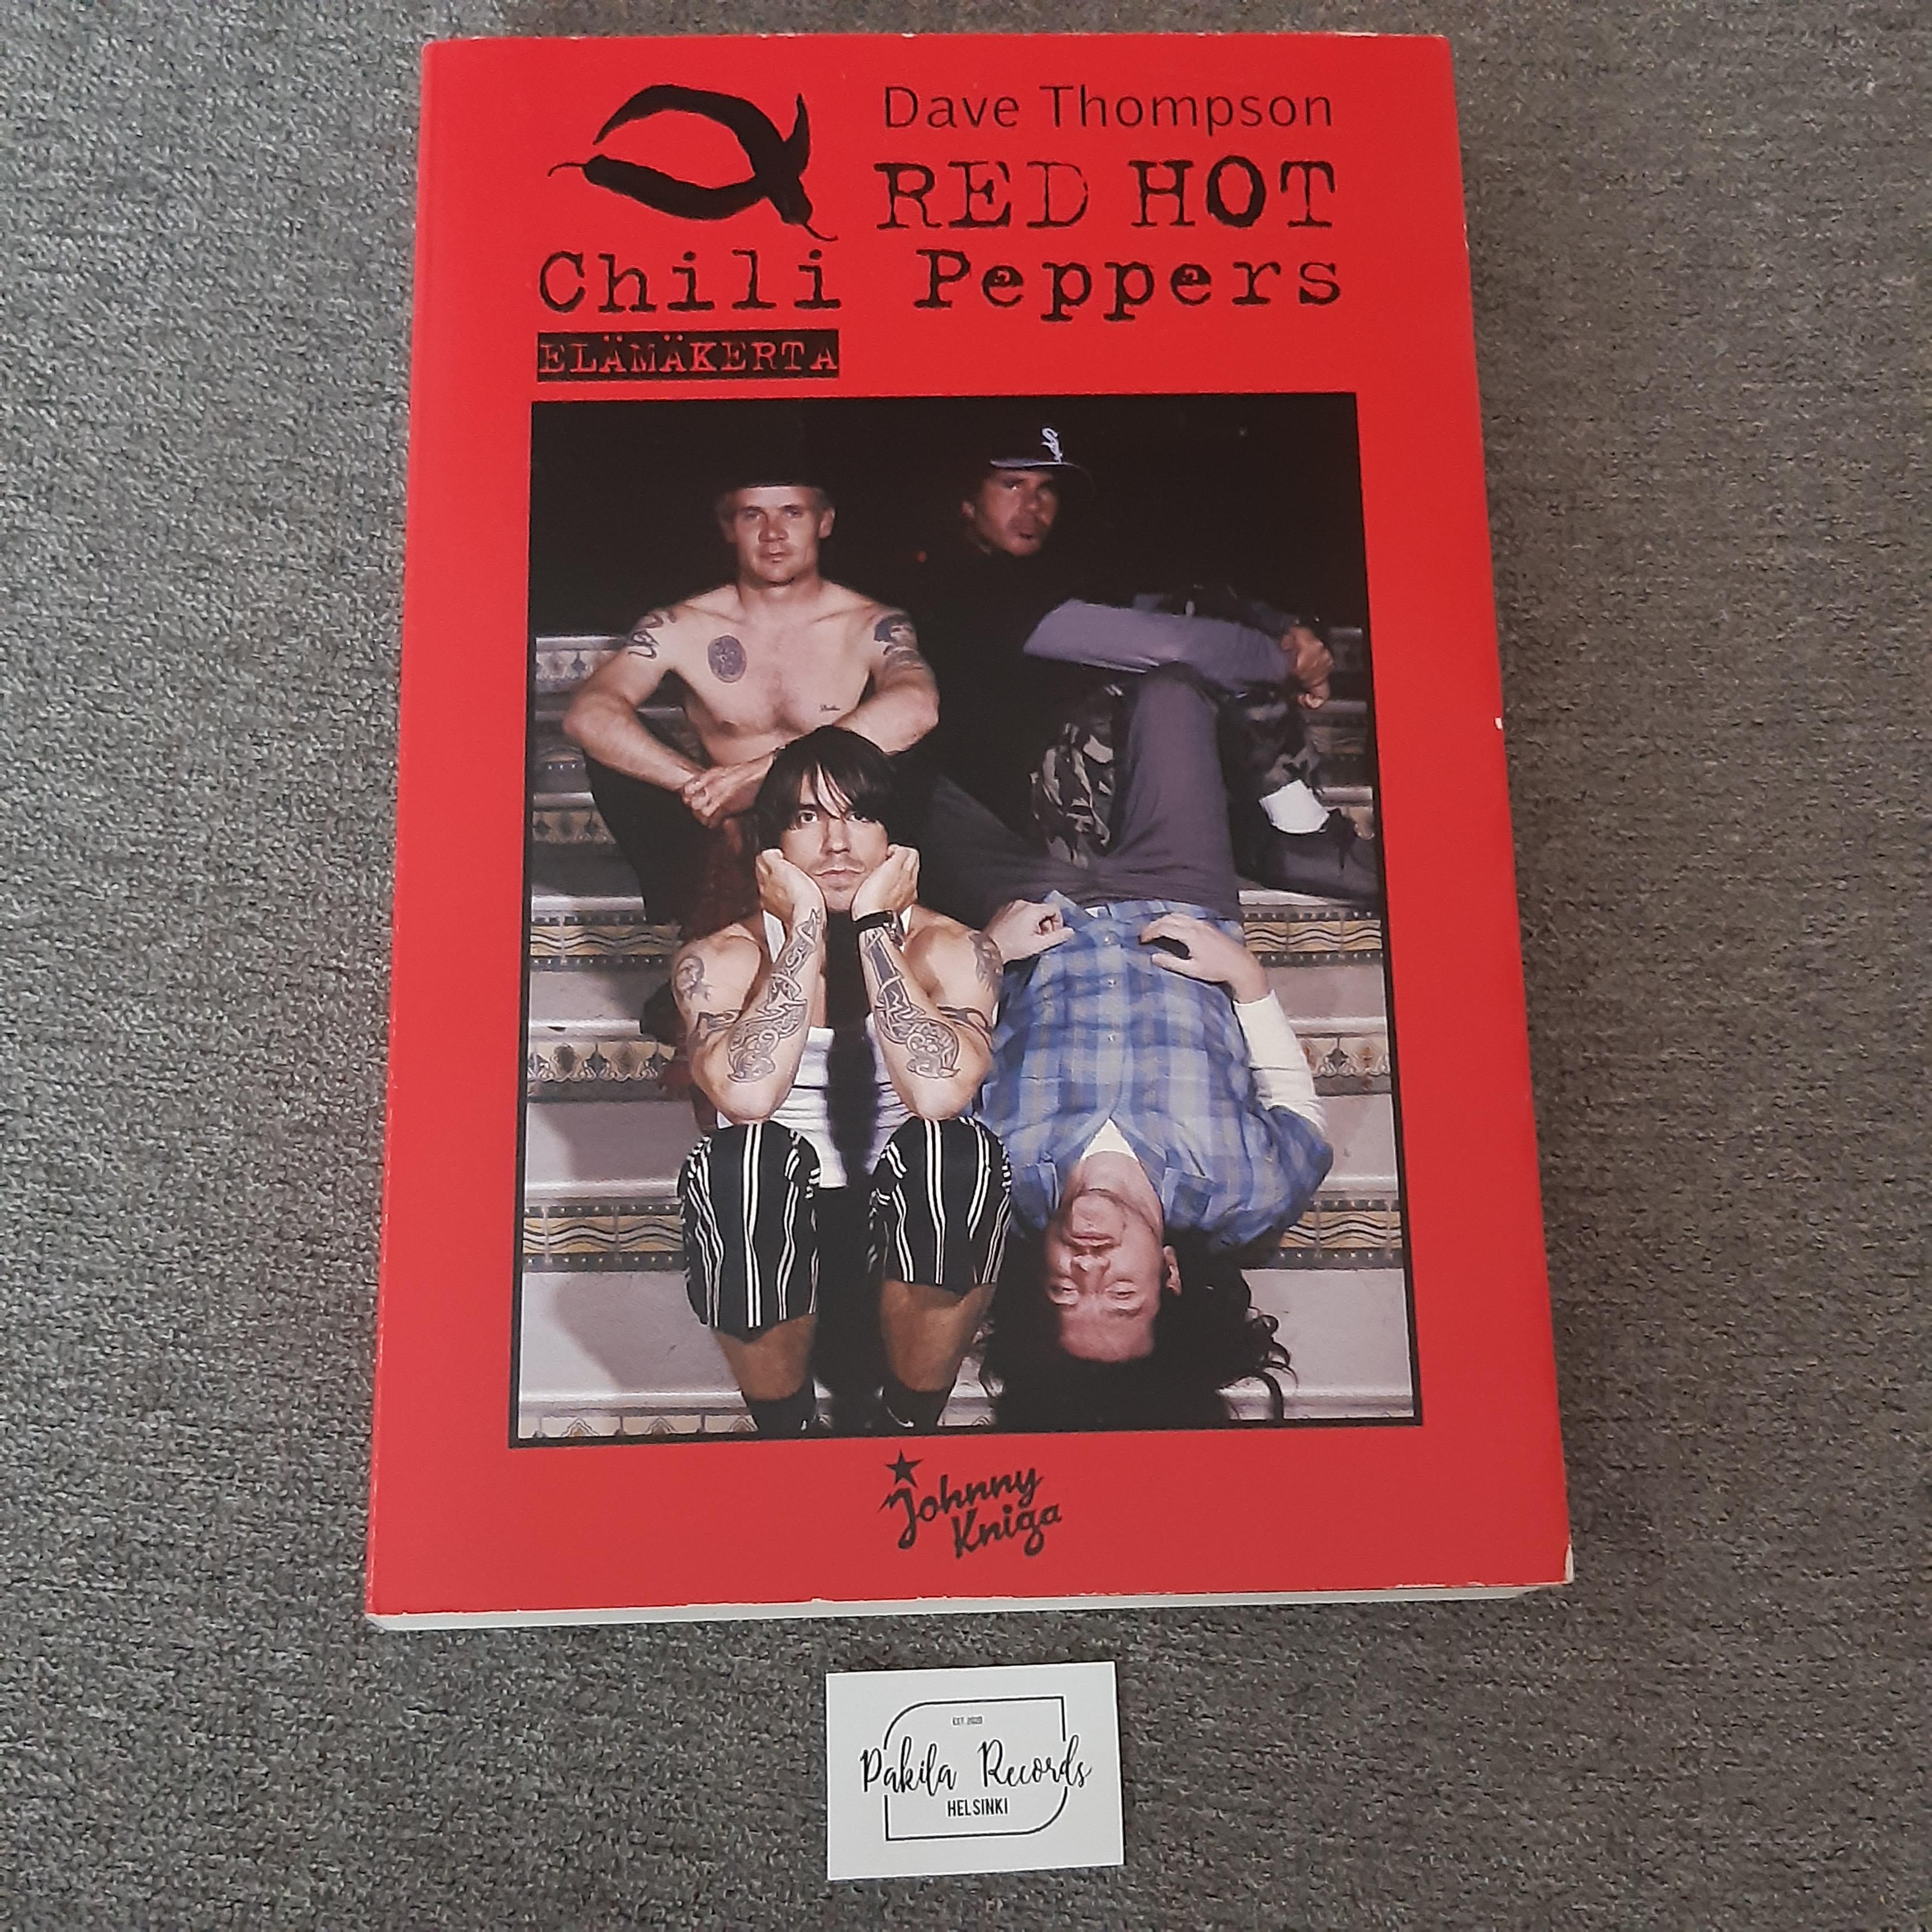 Red Hot Chili Peppers, Elämäkerta - Dave Thompson - Kirja (käytetty)